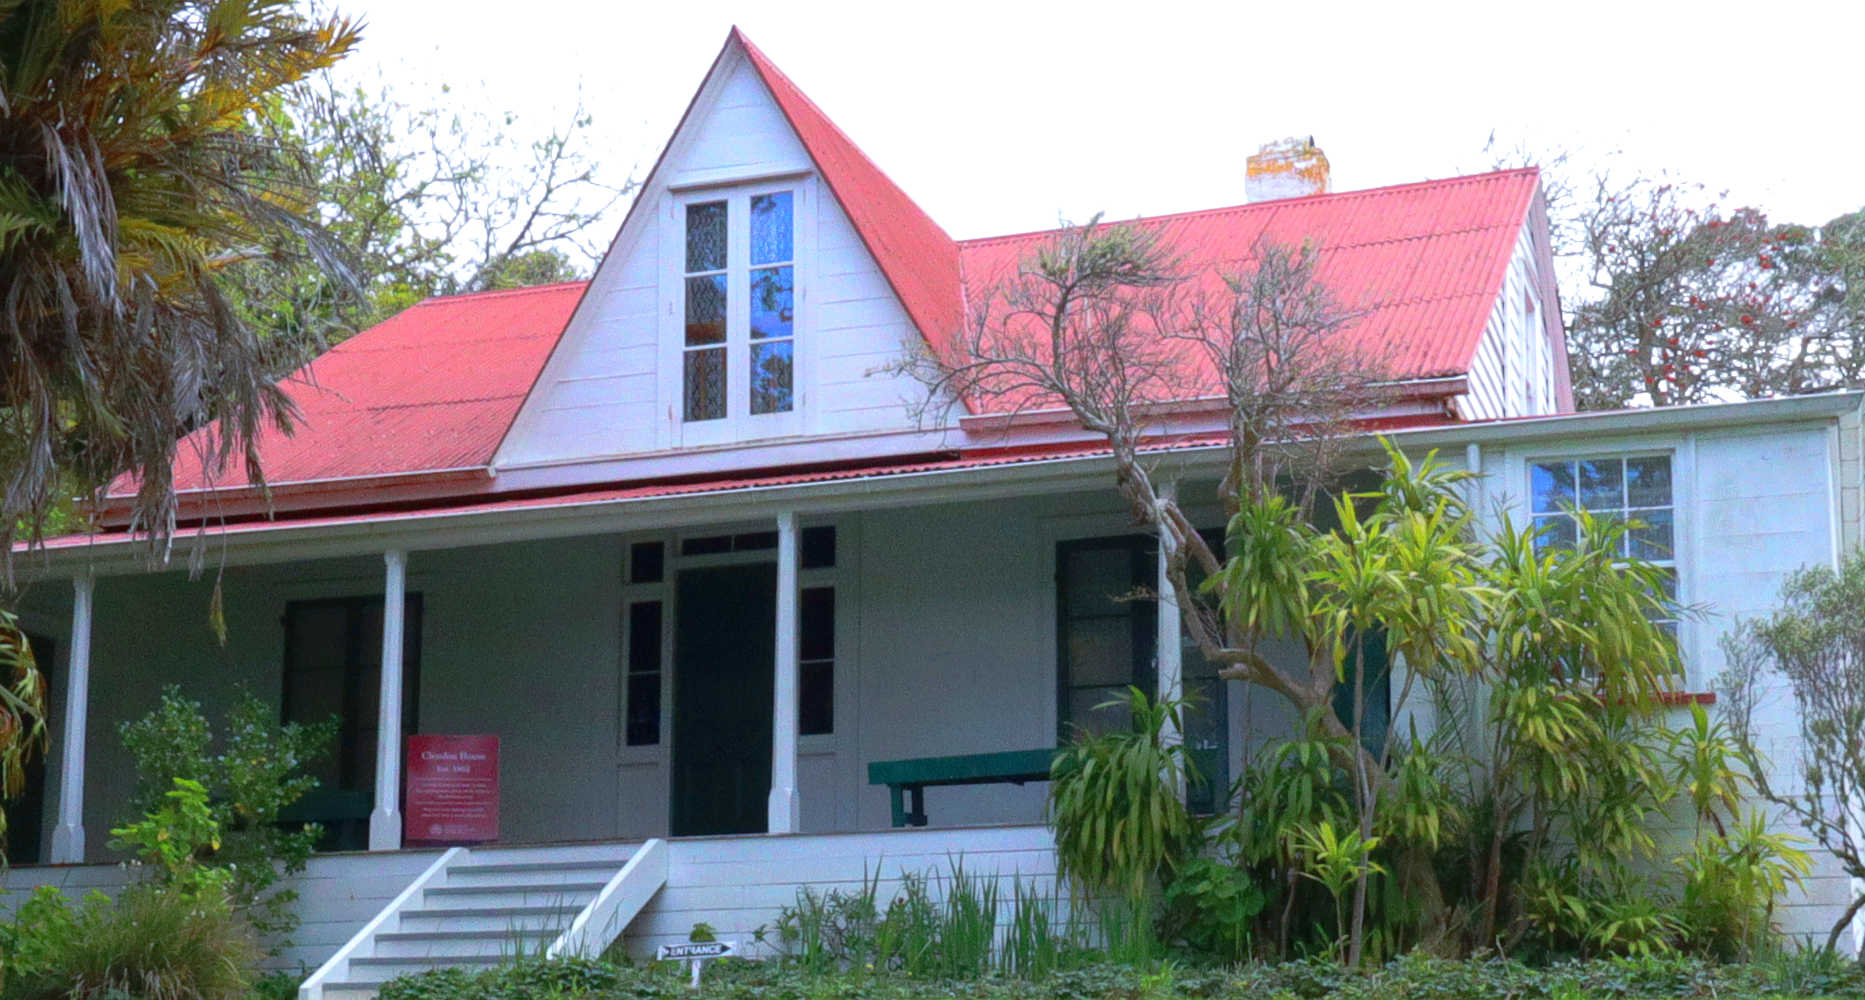 Clendon House, Rawene, New Zealand